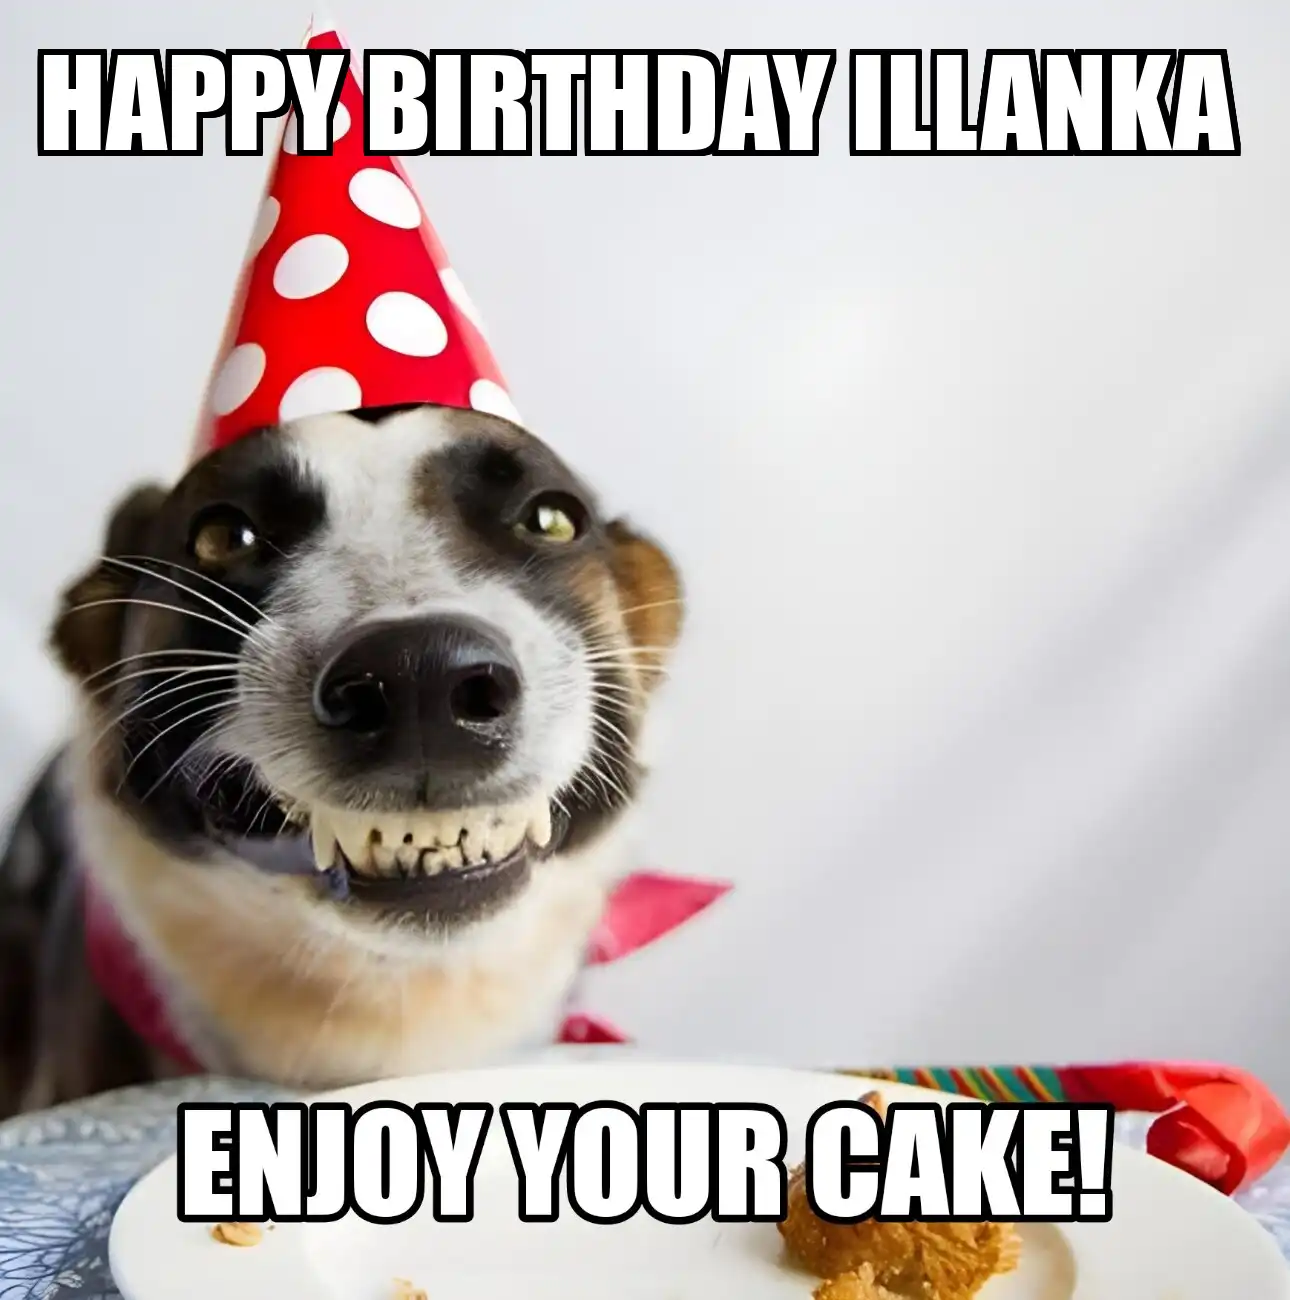 Happy Birthday Illanka Enjoy Your Cake Dog Meme